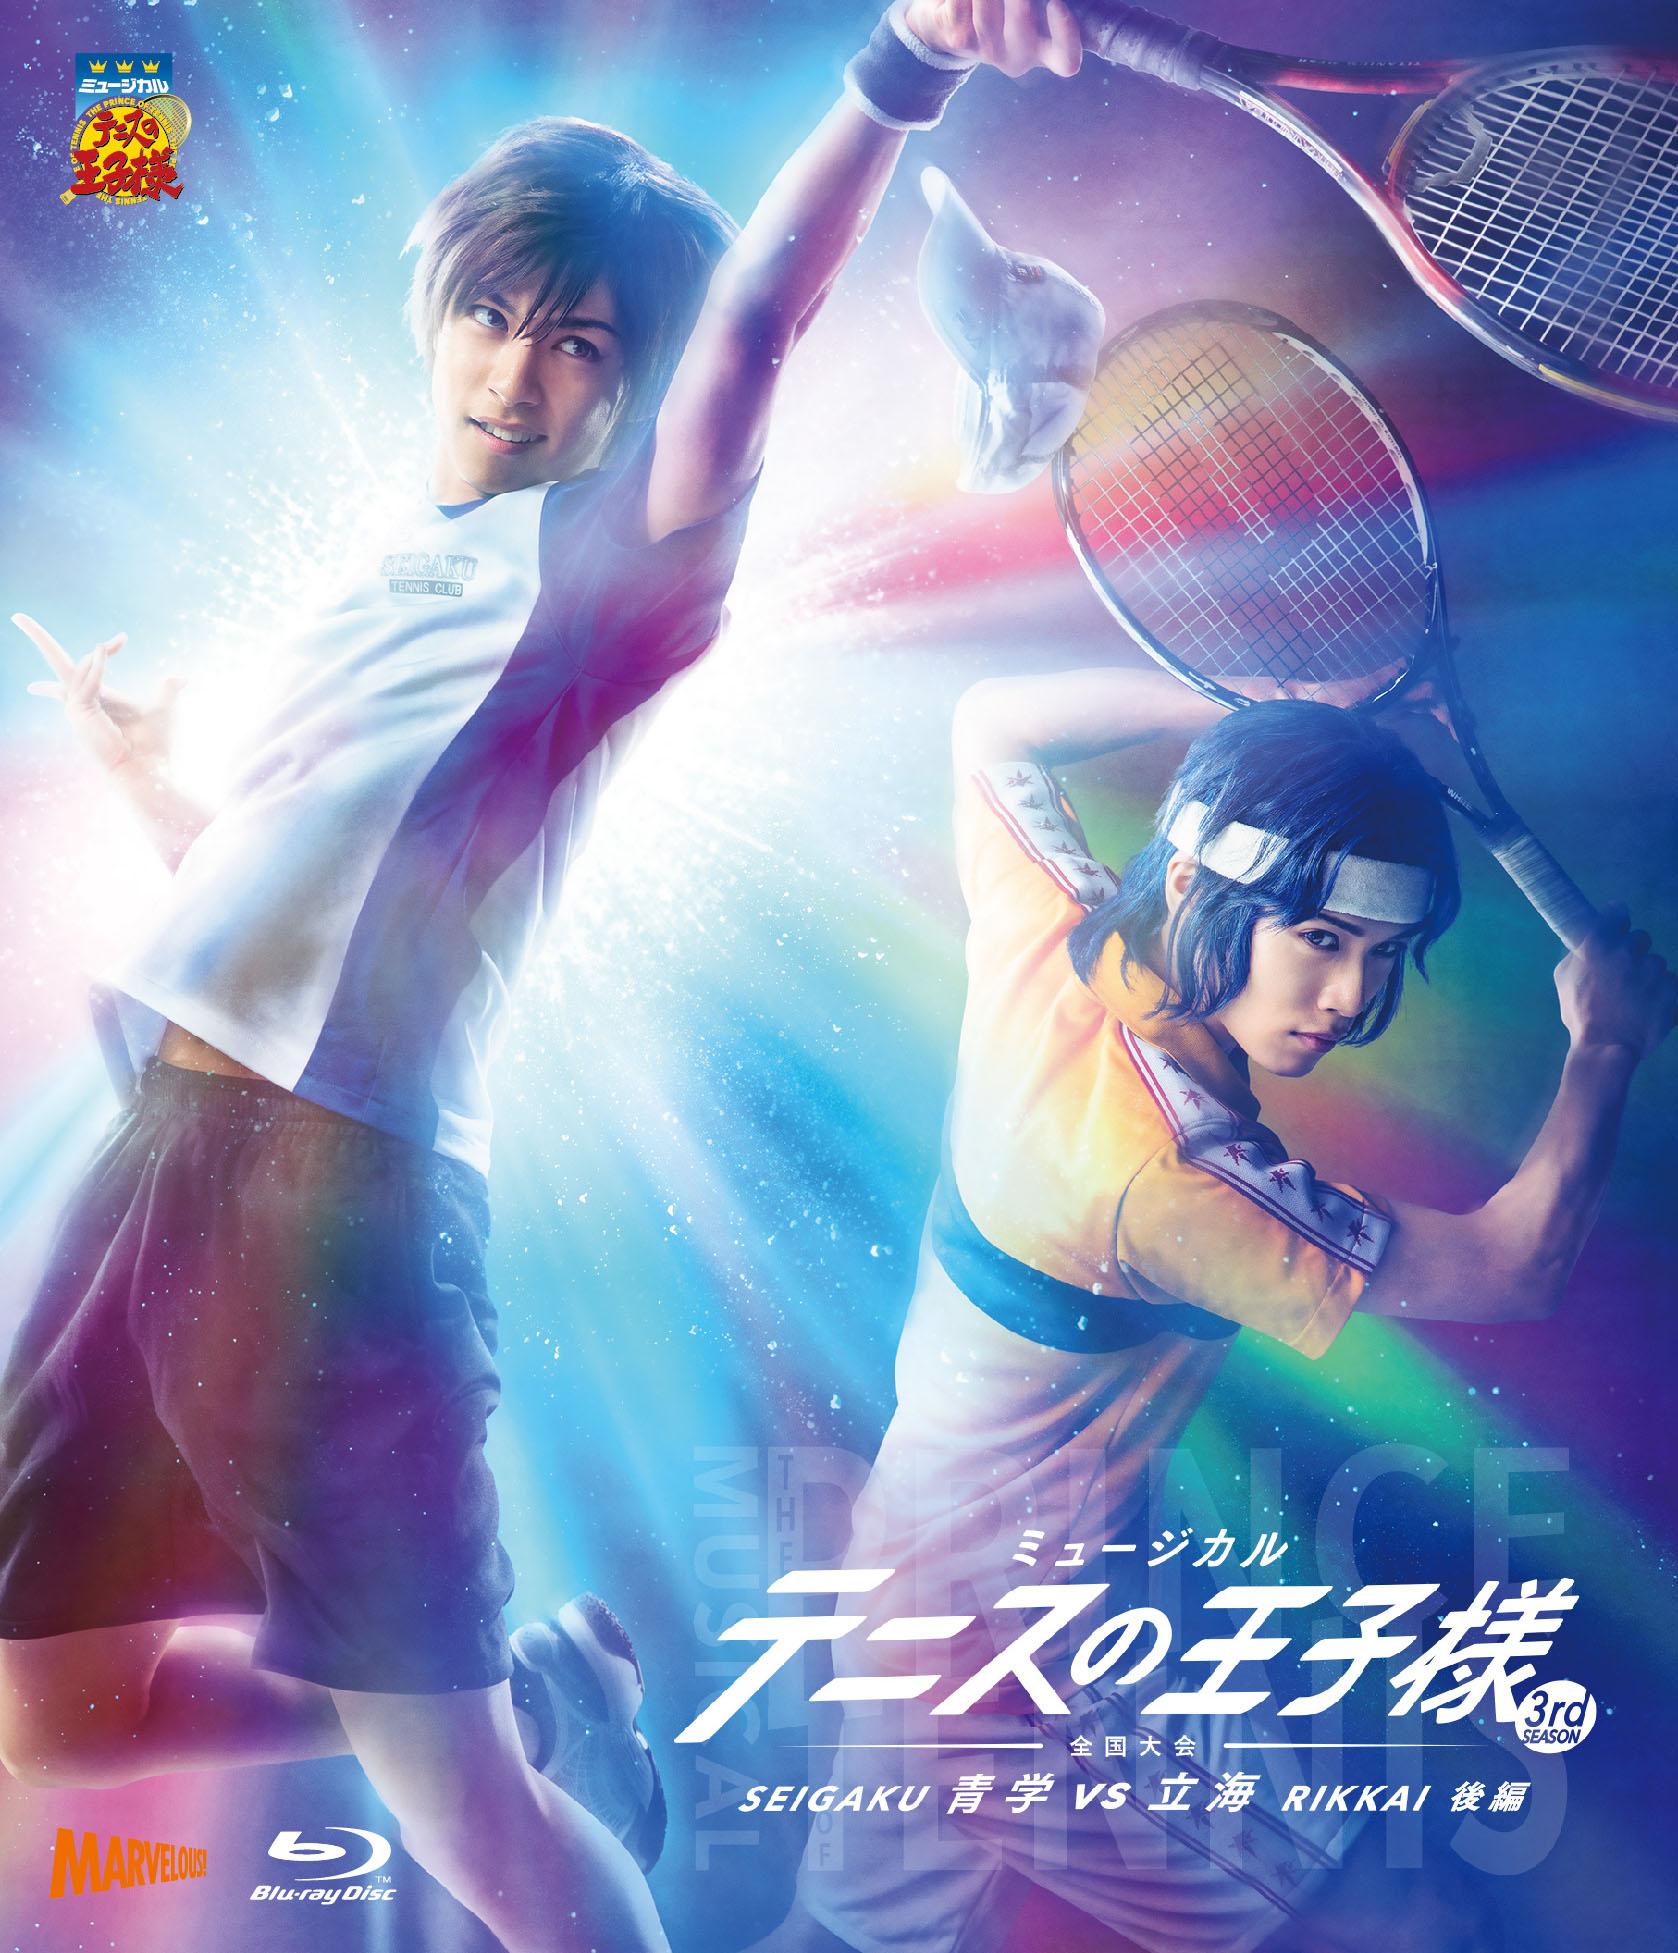 ミュージカル『テニスの王子様』3rdシーズン 青学vs比嘉 - マーベラス